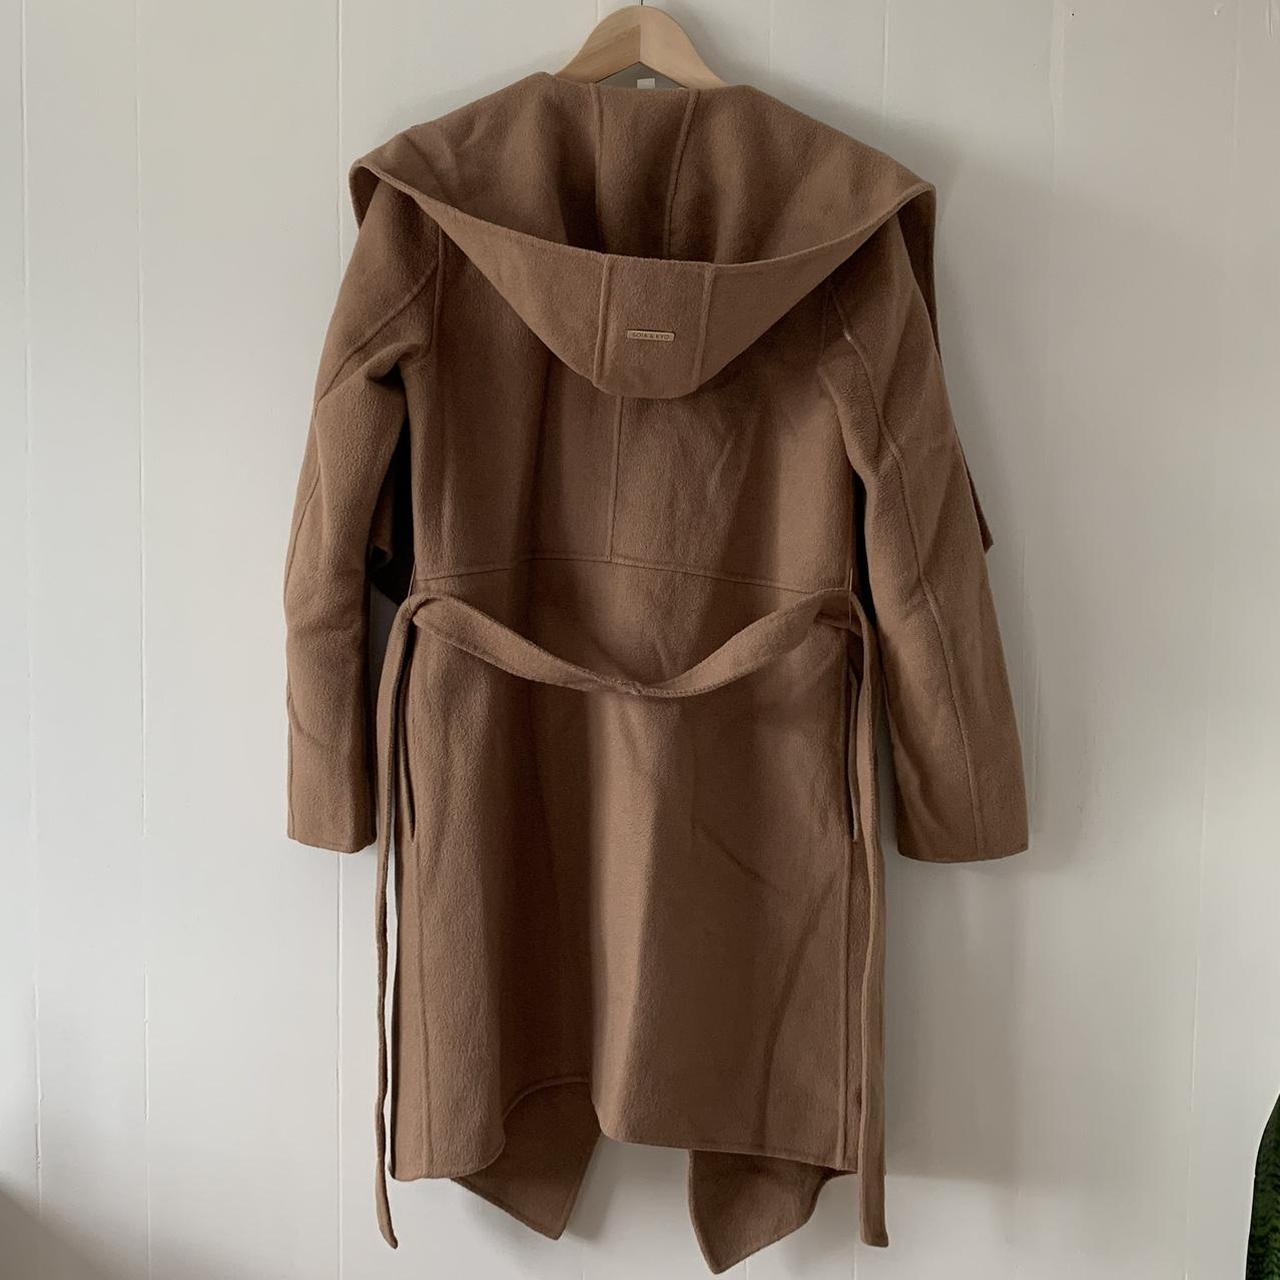 Women's Tan and Brown Coat (3)